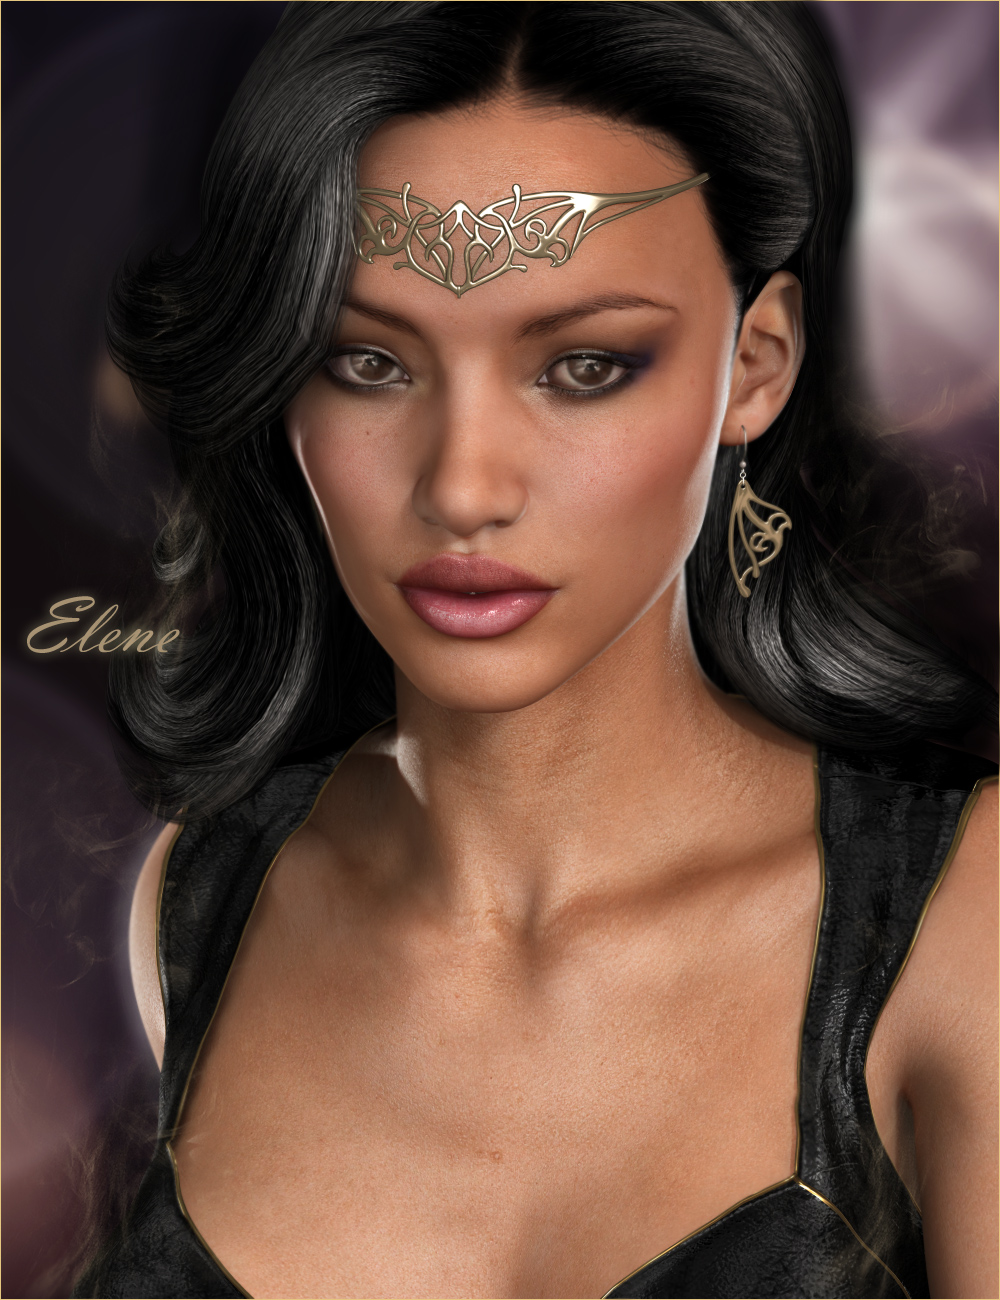 Elene HD for Victoria 6 by: Raiya, 3D Models by Daz 3D